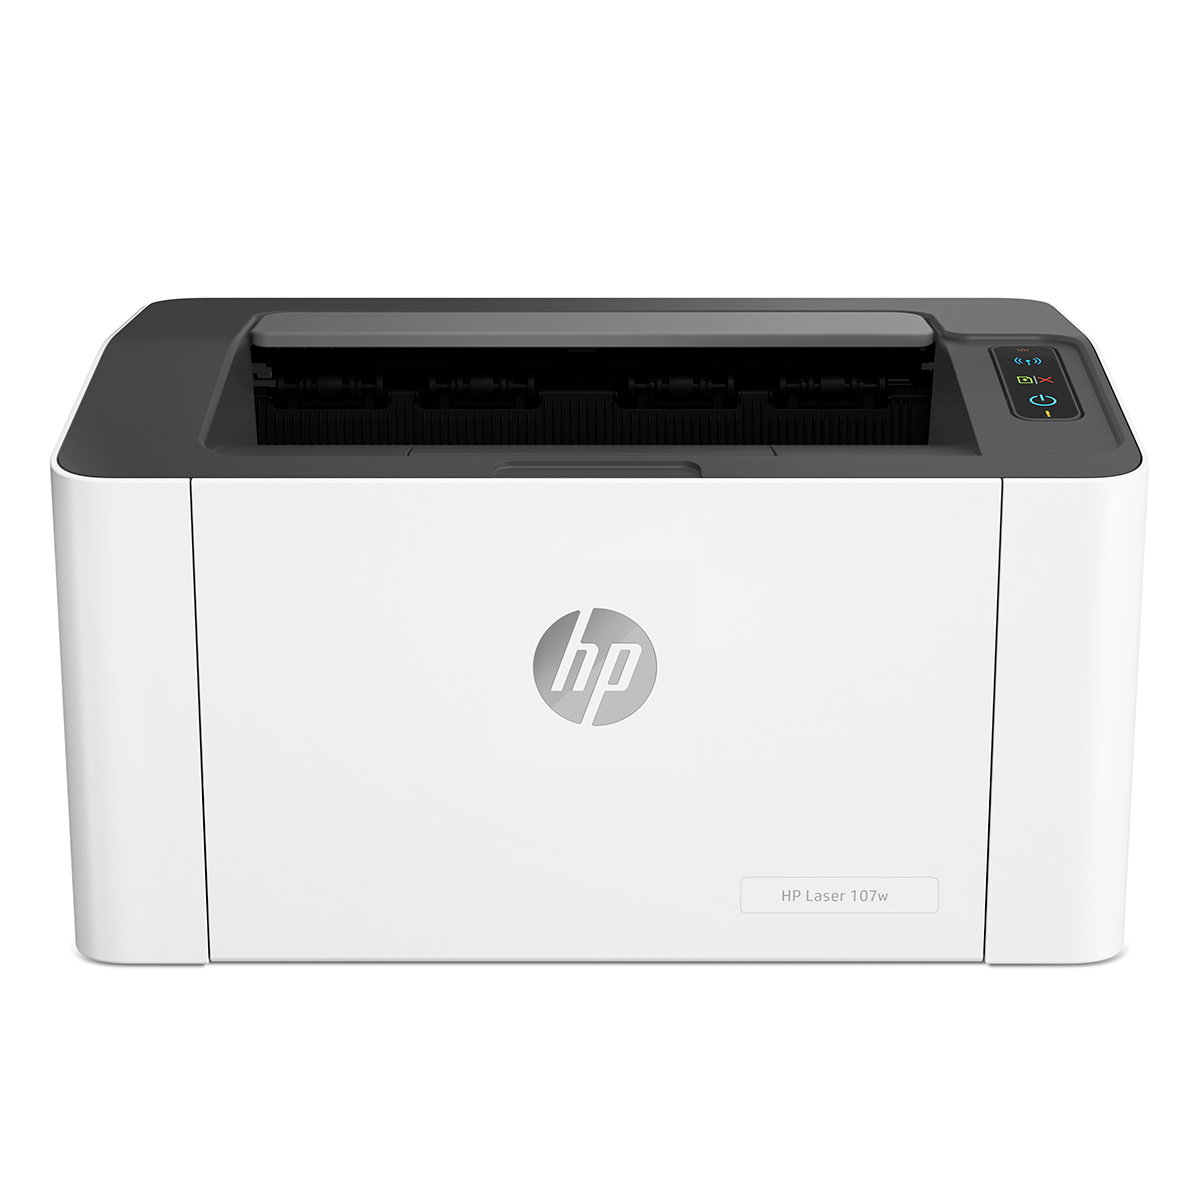 Impresora Hp 107W / Láser / Blanco y negro / WiFi / USB